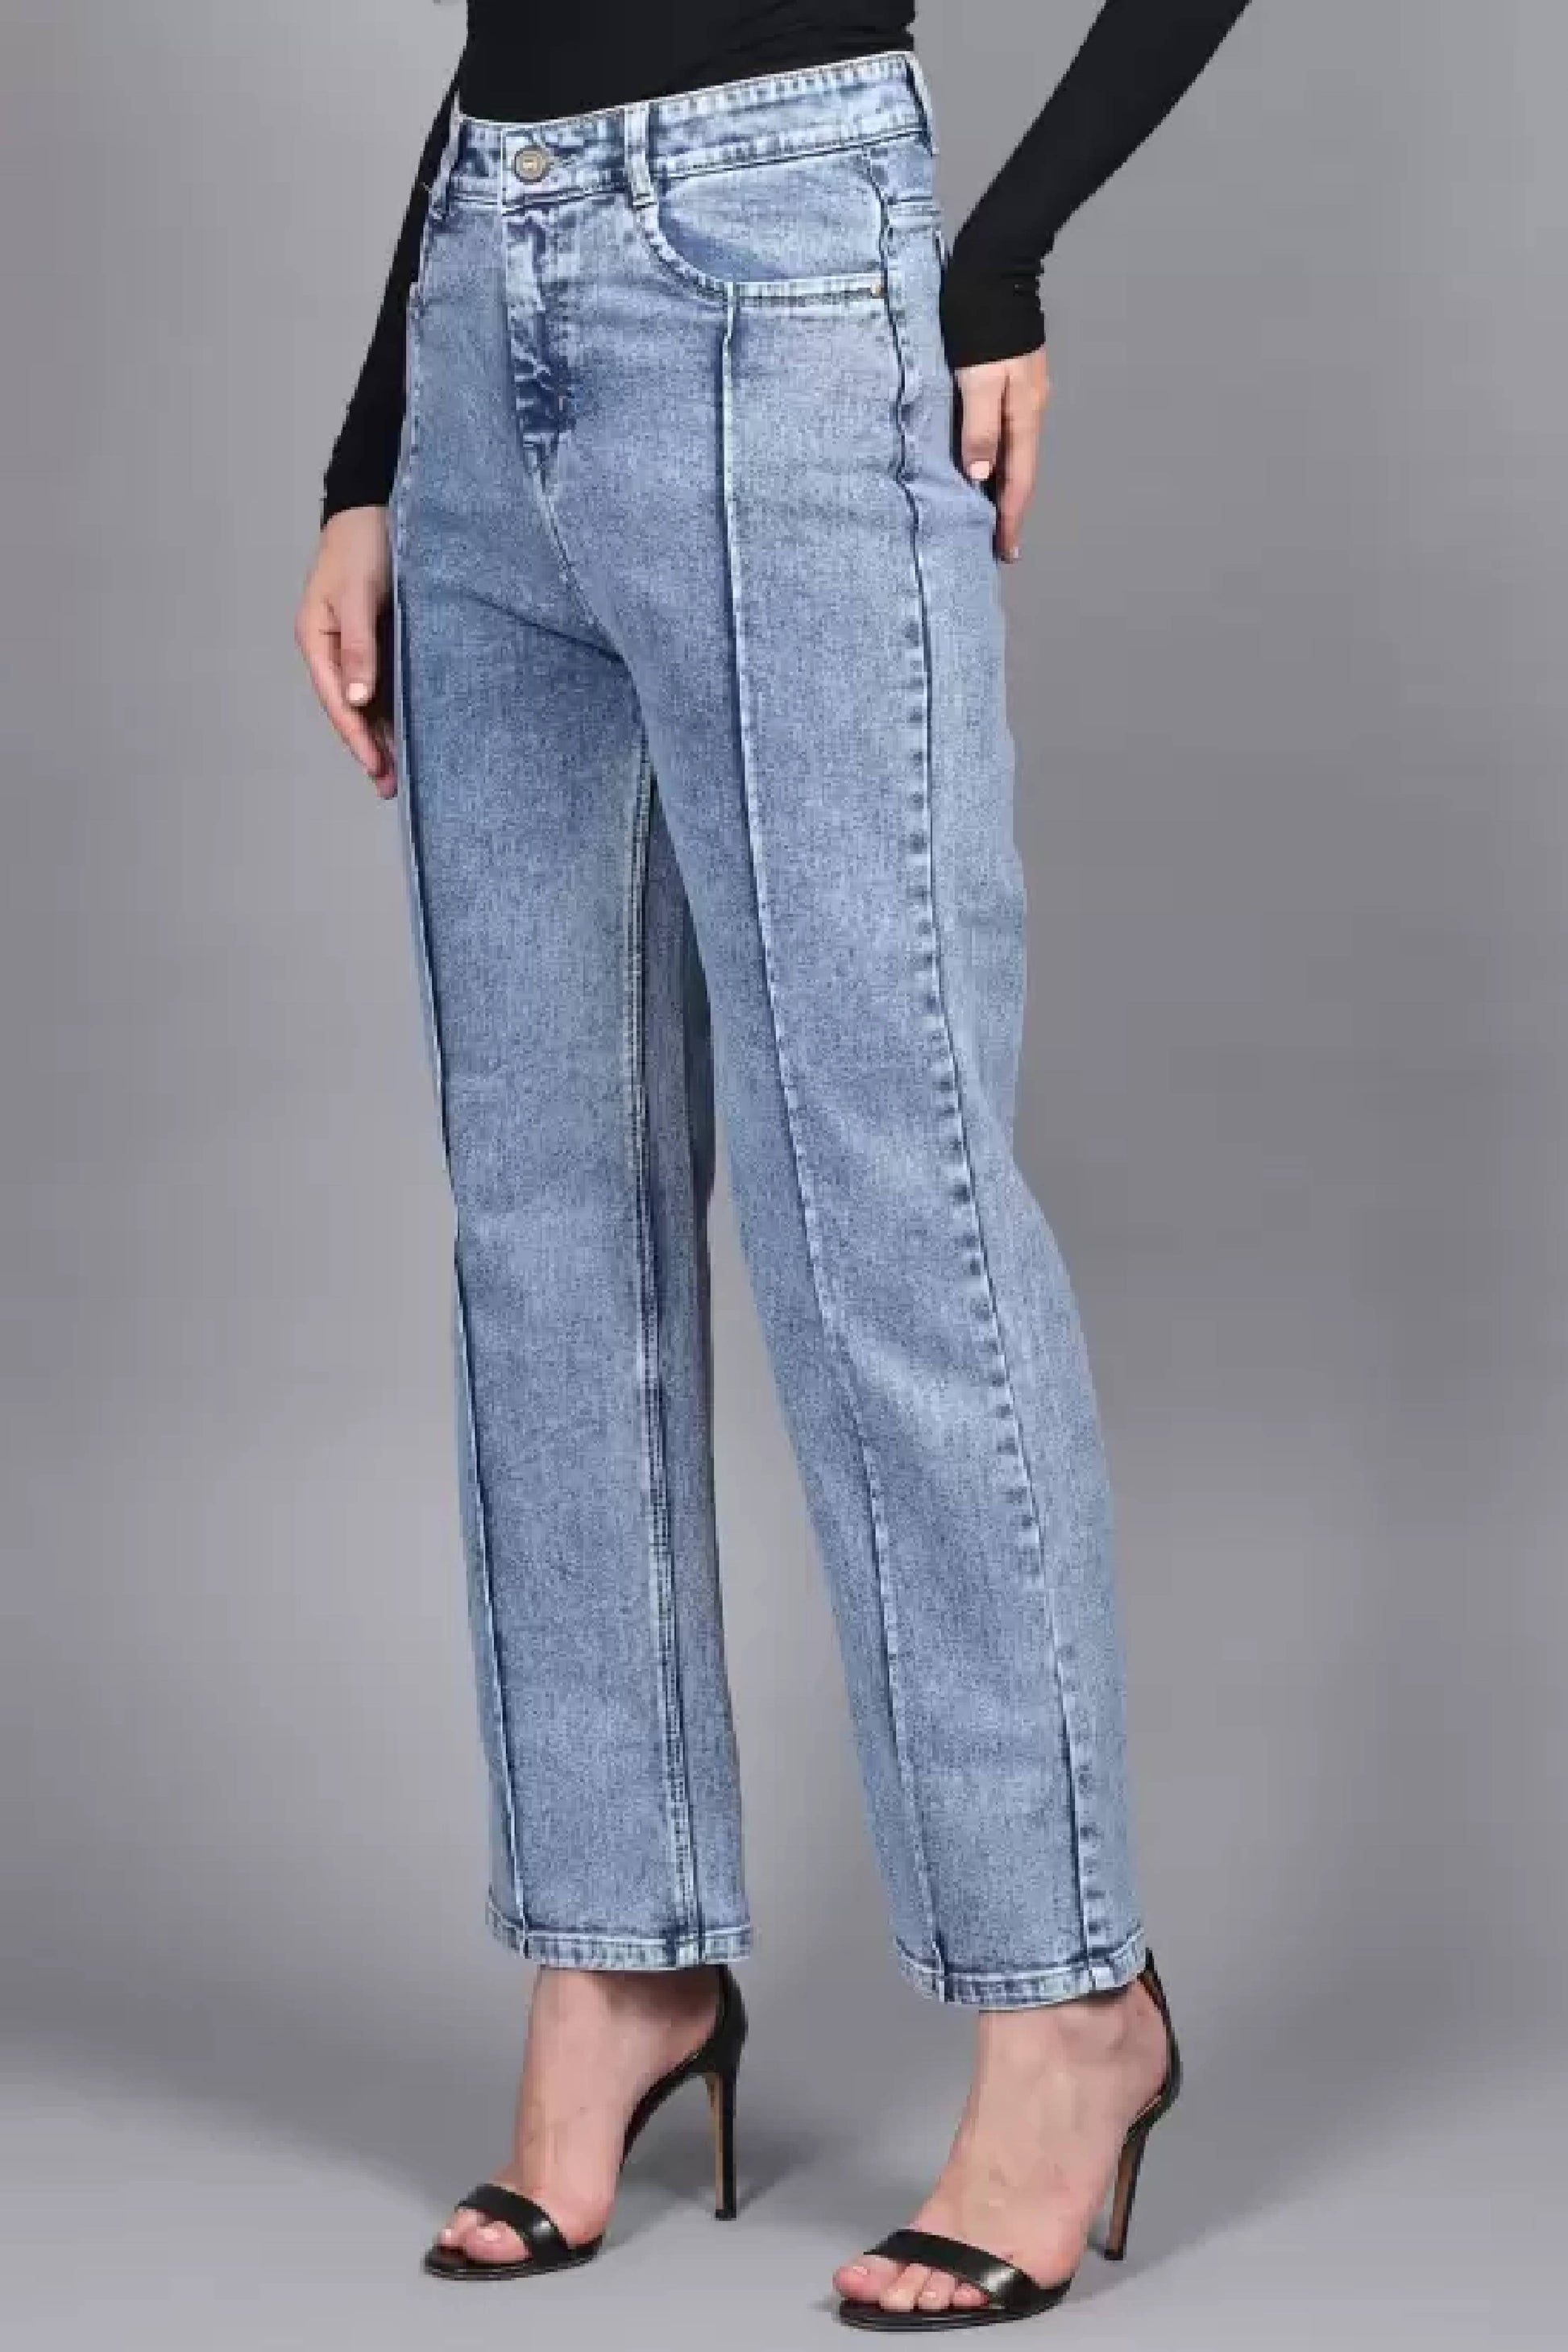 Straight leg light blue high rise denim jeans for women dubai online